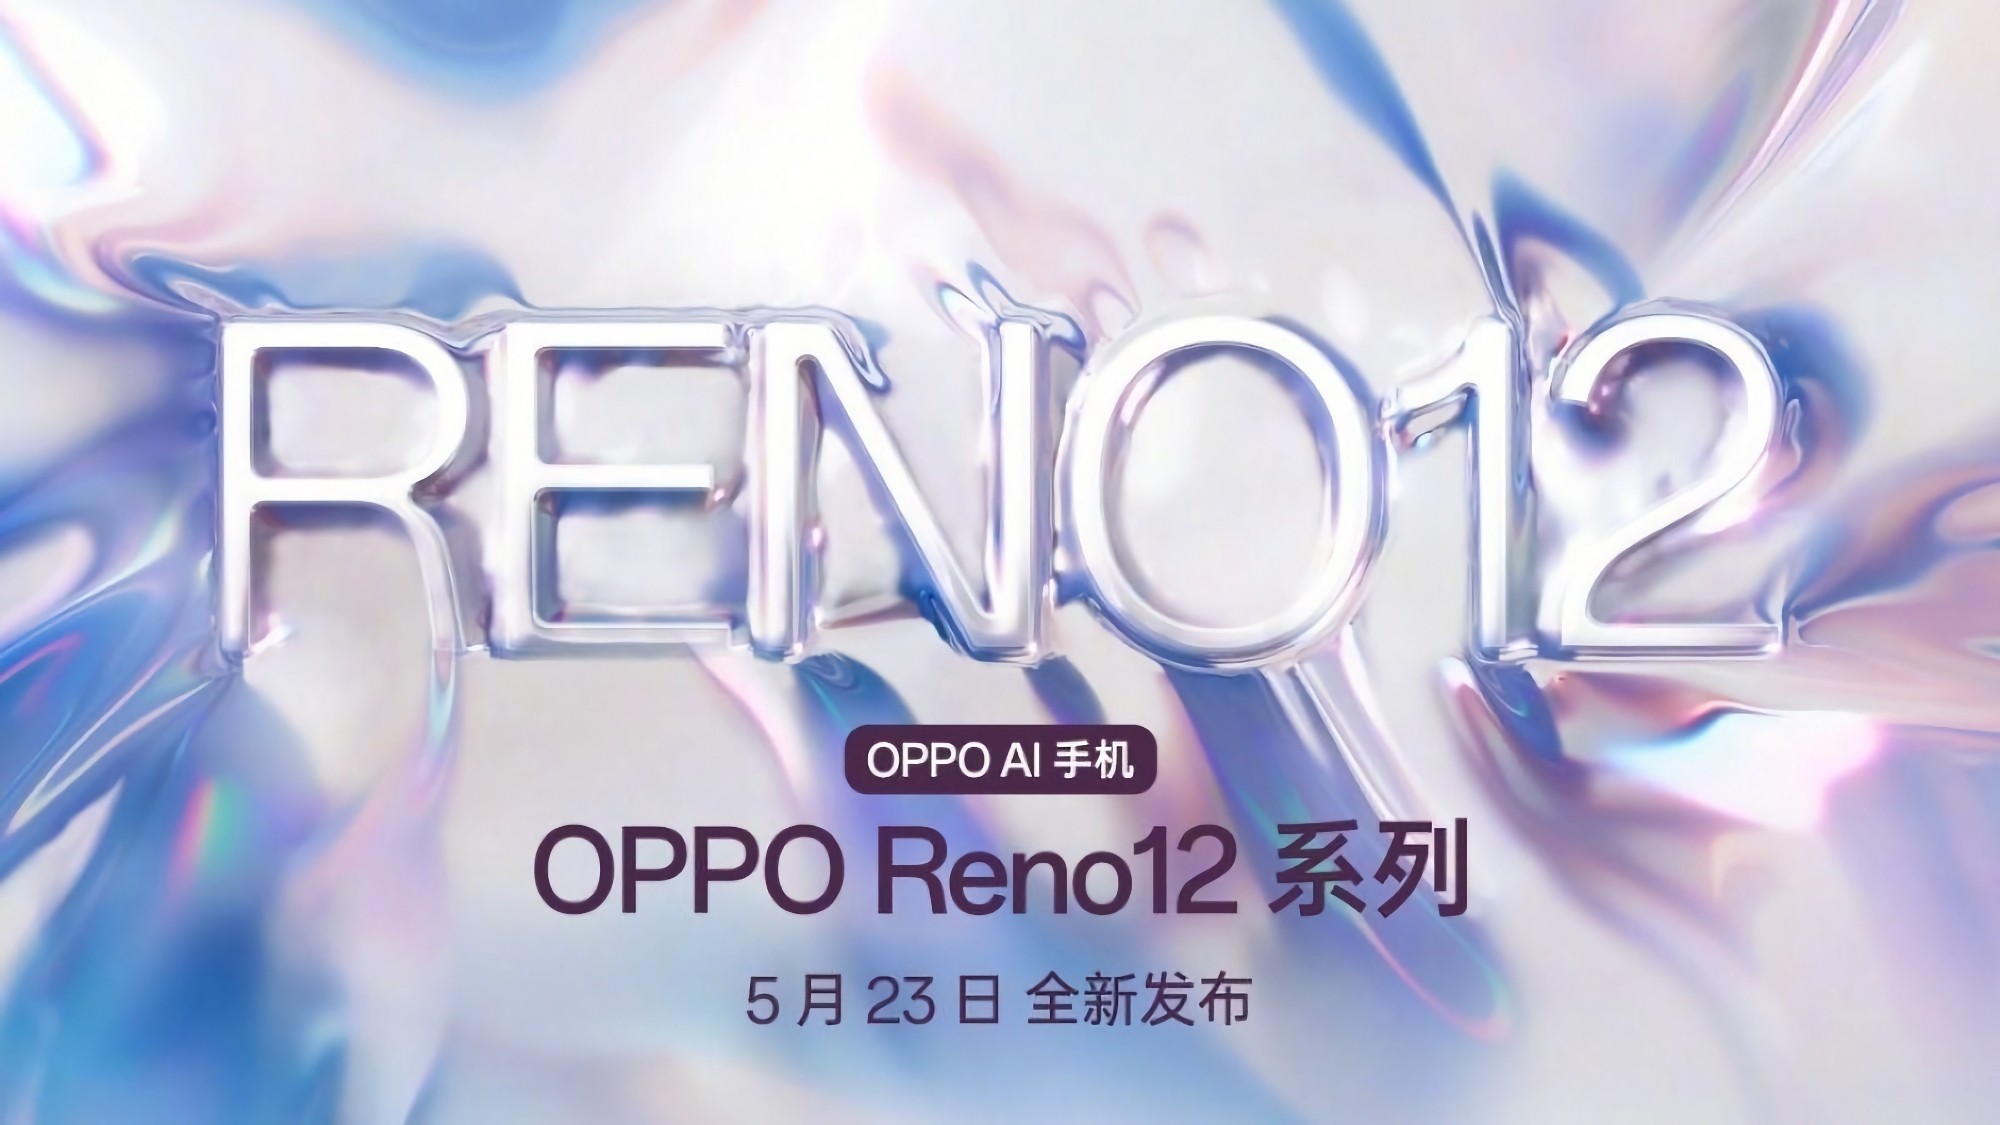 Det er officielt: OPPO Reno 12-serien af smartphones får debut den 23. maj